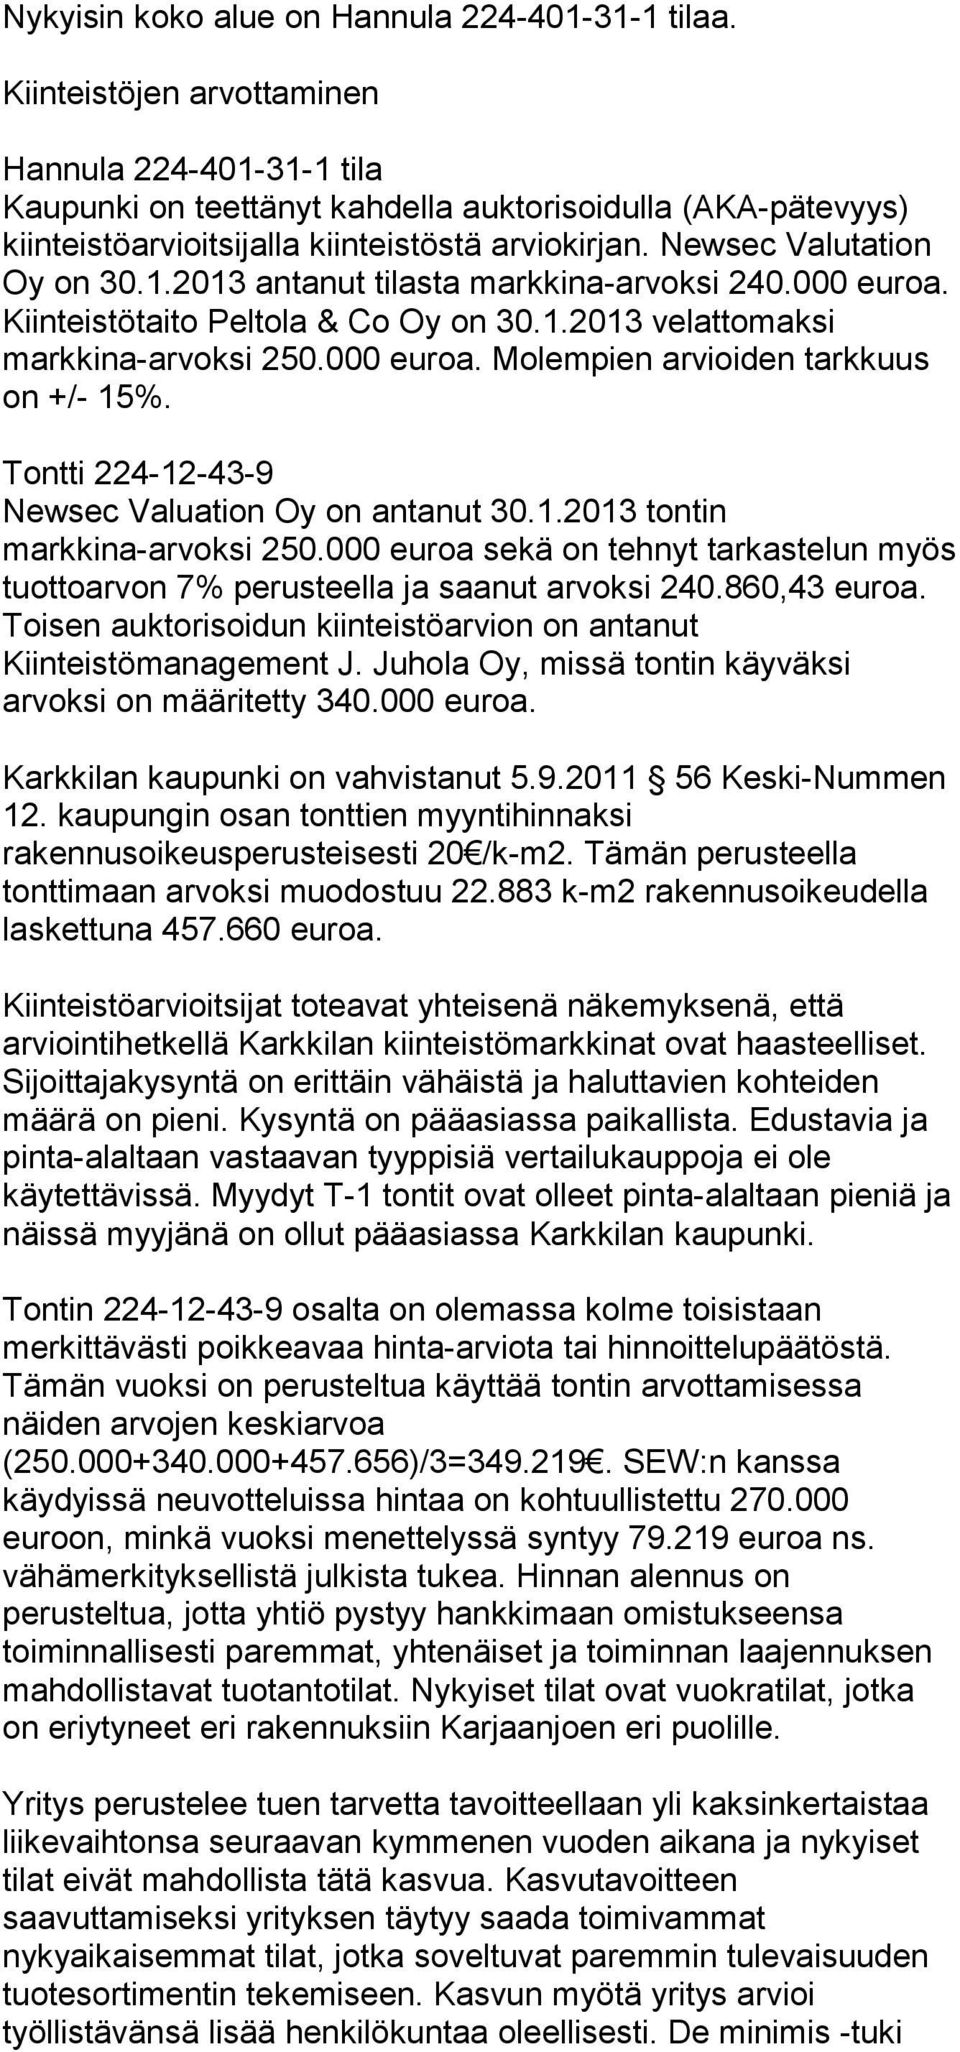 000 euroa. Kiinteistötaito Peltola & Co Oy on 30.1.2013 velattomaksi markkina-arvoksi 250.000 euroa. Molempien arvioiden tarkkuus on +/- 15%. Tontti 224-12-43-9 Newsec Valuation Oy on antanut 30.1.2013 tontin markkina-arvoksi 250.